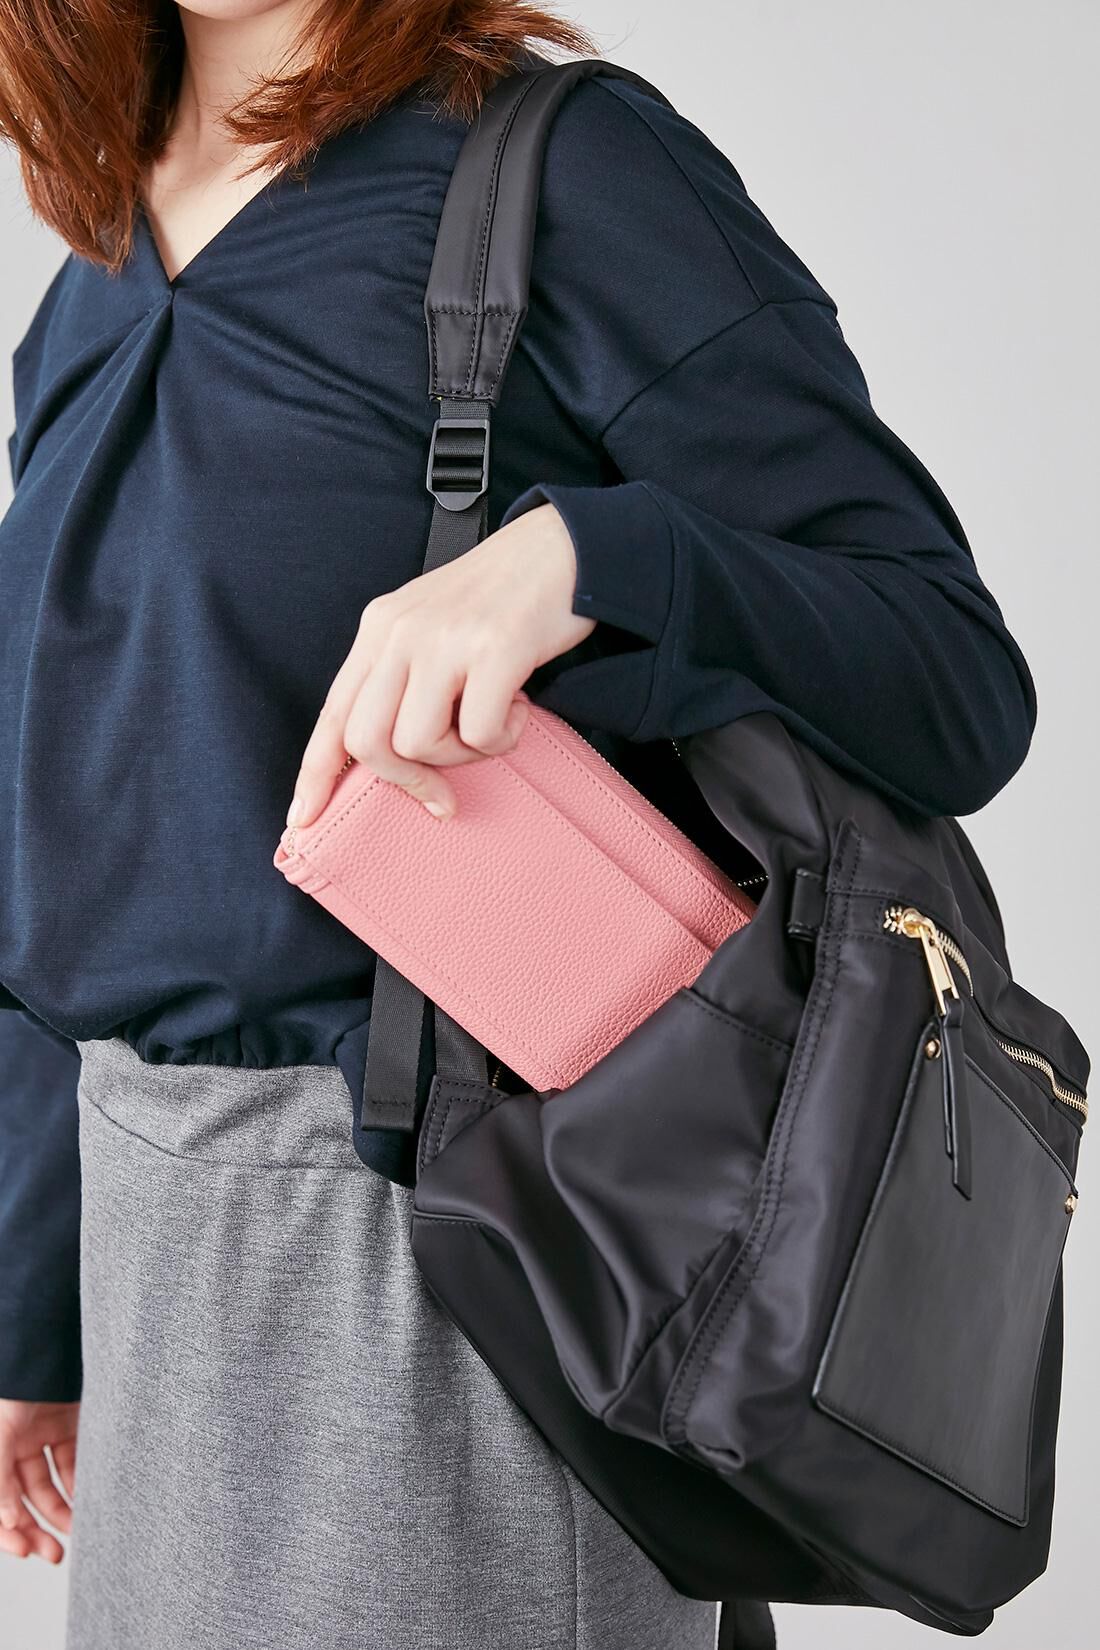 イディット|IEDIT[イディット]ワガママ企画　通勤にうれしい安心機能が盛りだくさん！ きれいめ大人リュック〈ブラック〉|背負ったまま、背中側のファスナーから財布などを取り出せます。